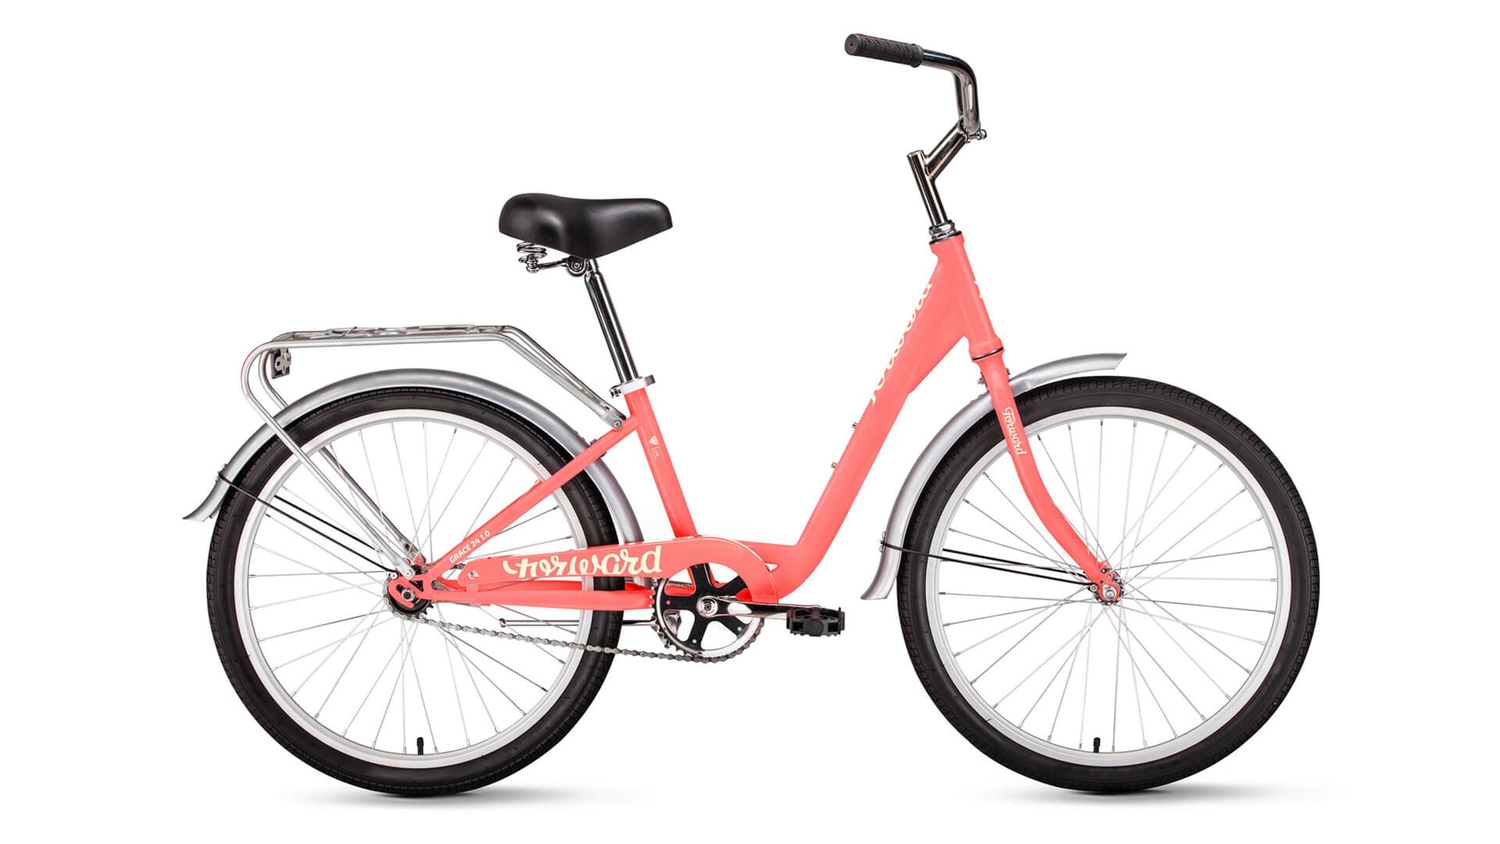 Подростковый велосипед Forward Grace 24, год 2022, цвет Фиолетовый-Белый